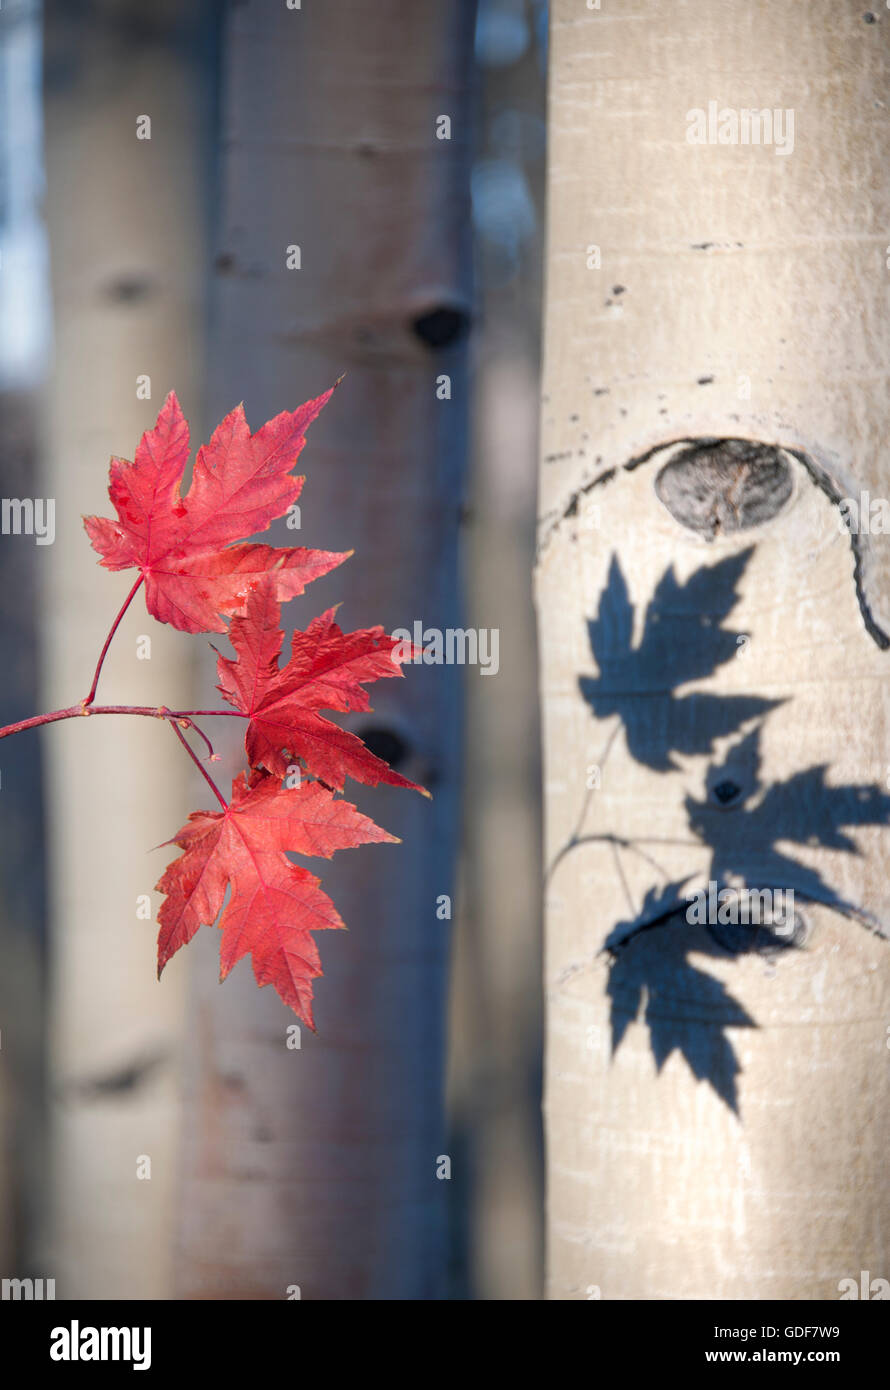 Aspen árboles con hojas de arce en otoño. Foto de stock